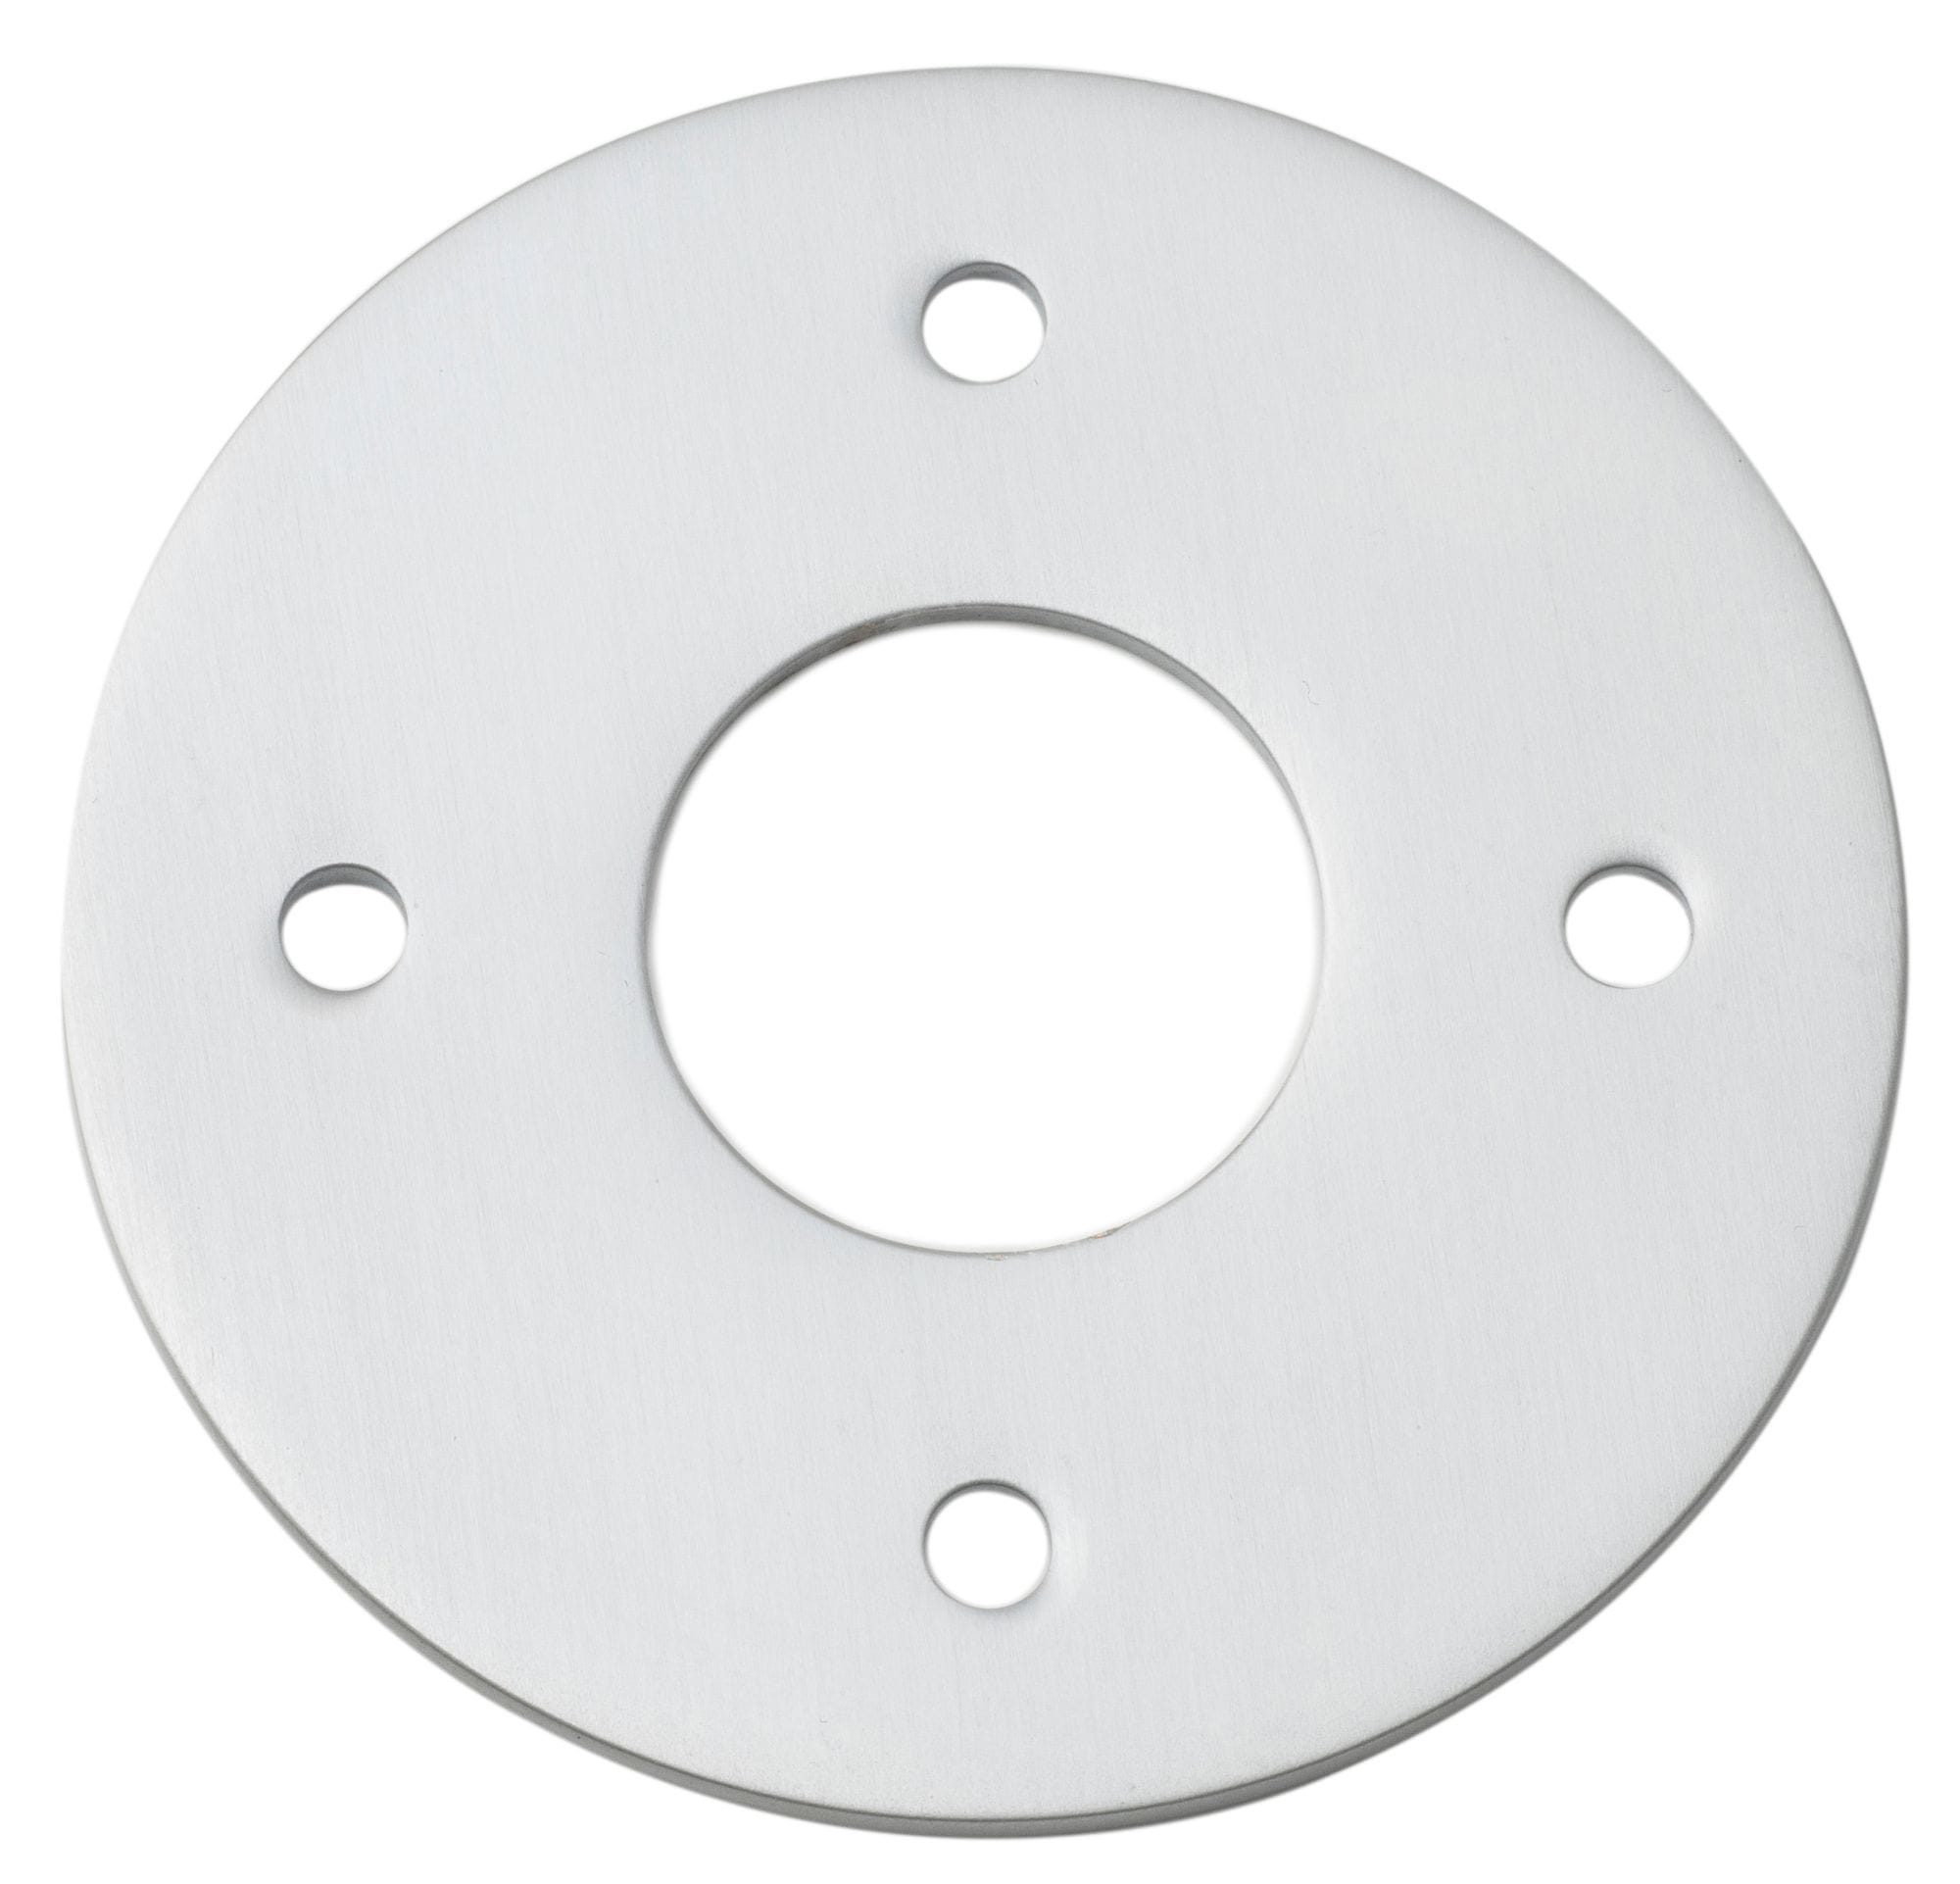 Adaptor Plate (Pair) Round Brushed Chrome